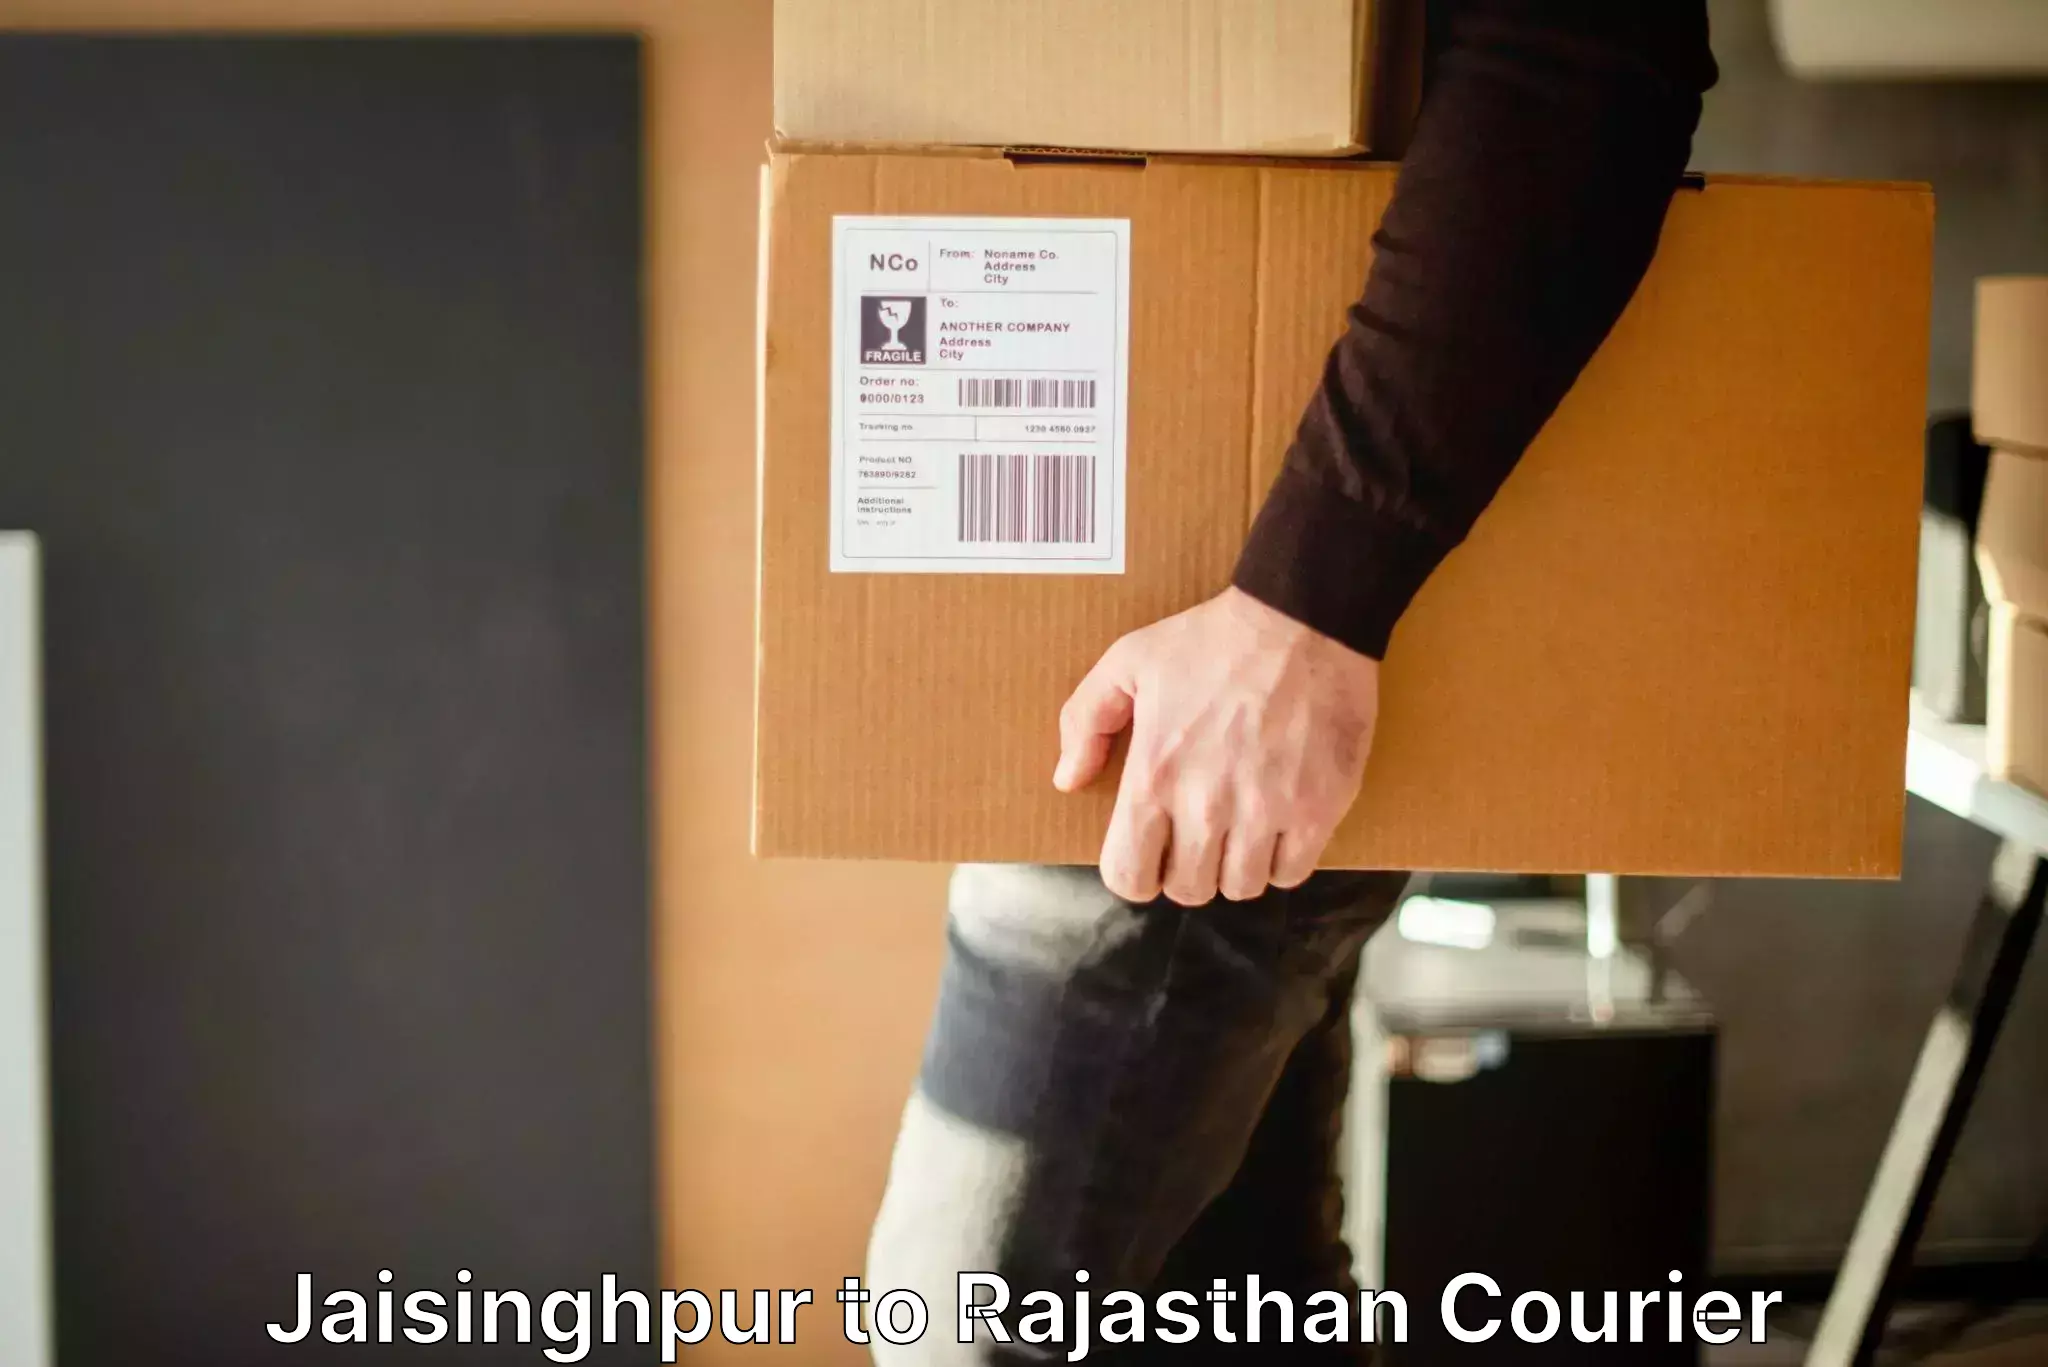 Baggage courier rates calculator Jaisinghpur to Jaipur